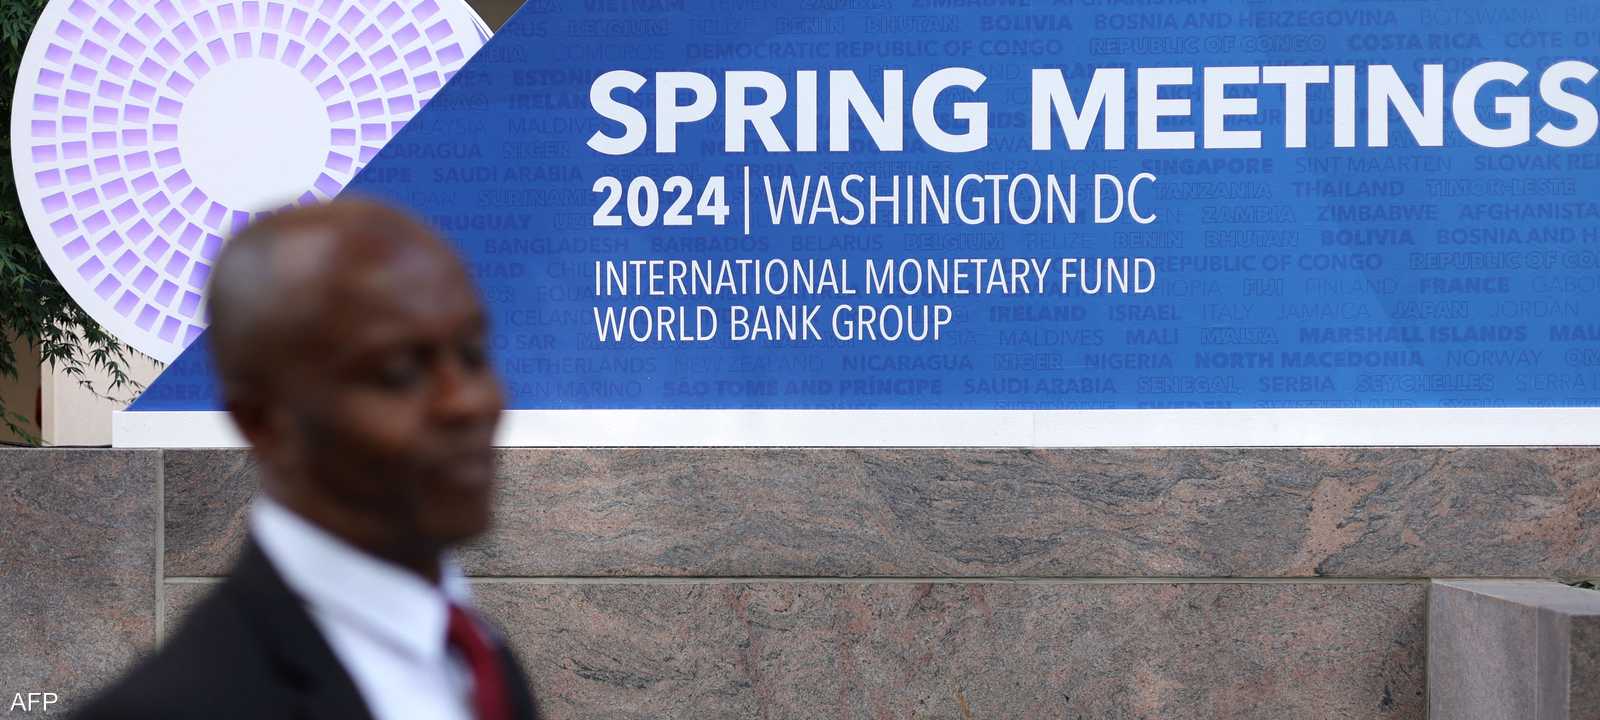 اجتماعات الربيع 2024 لمجموعة البنك الدولي وصندوق النقد